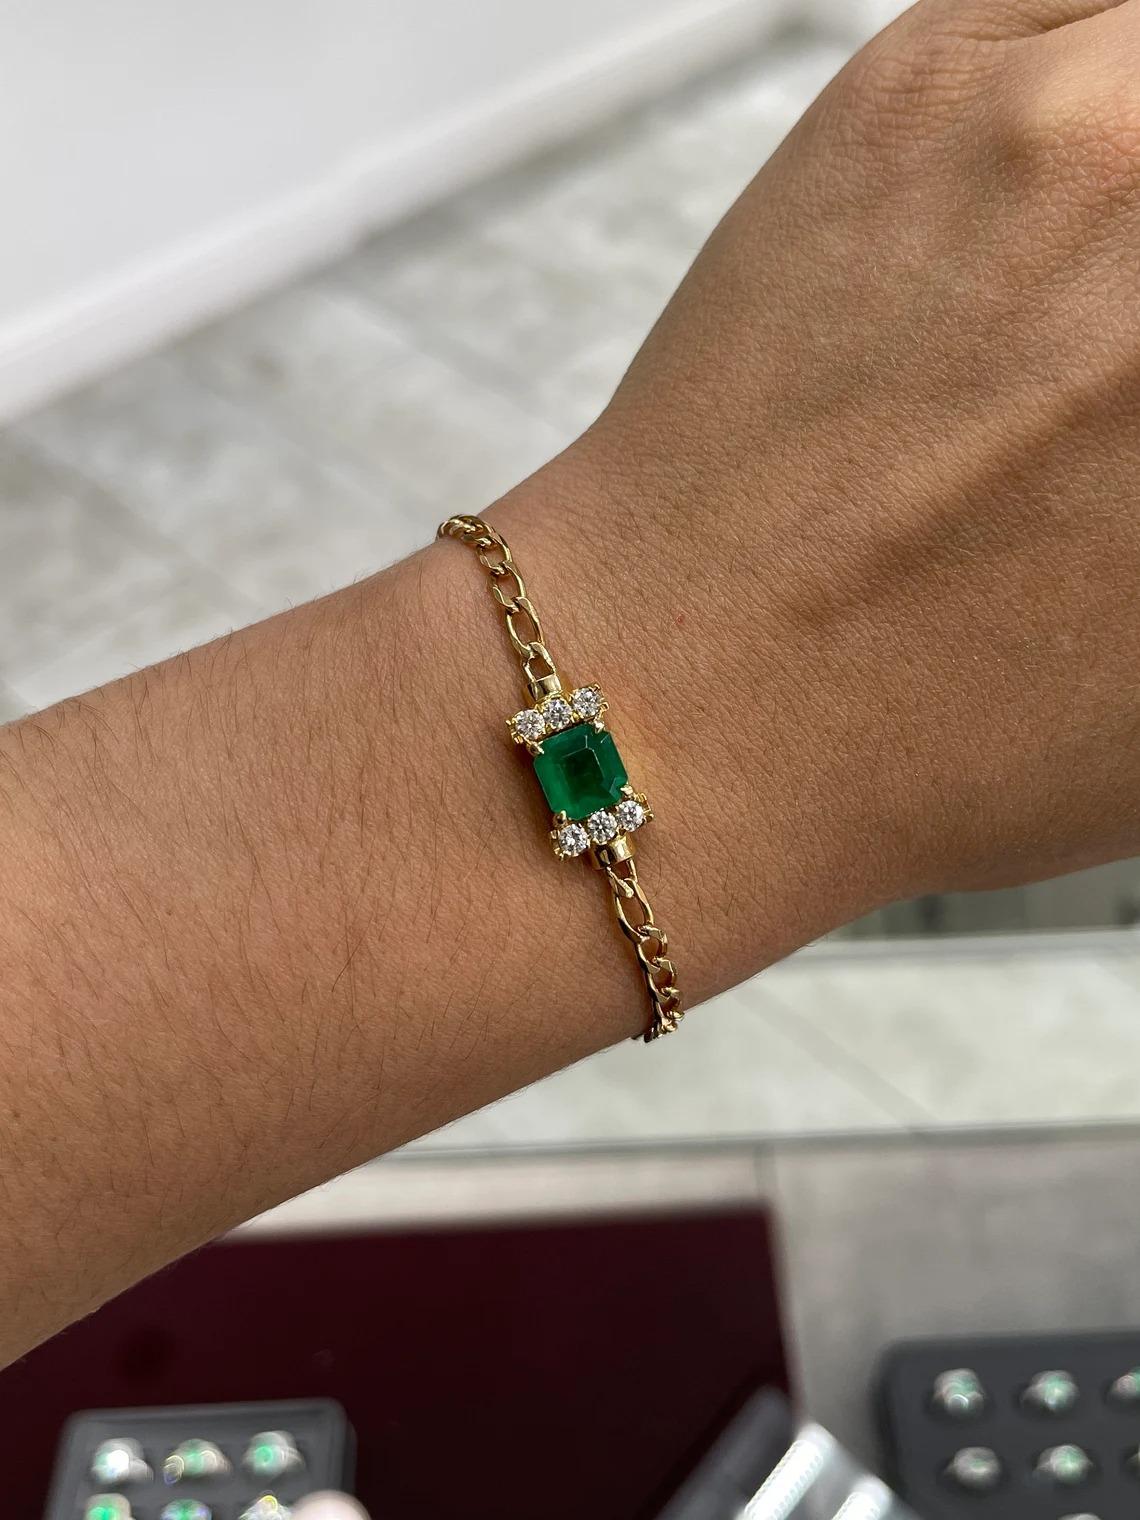 Ein bemerkenswertes Smaragd- und Diamantarmband. Der Mittelstein besteht aus einem hochwertigen kolumbianischen AAA-Smaragd mit einem Gewicht von 2,89 Karat, der in vier Zacken gefasst ist und eine lebhafte, satte, gelblich-grüne Farbe und einen